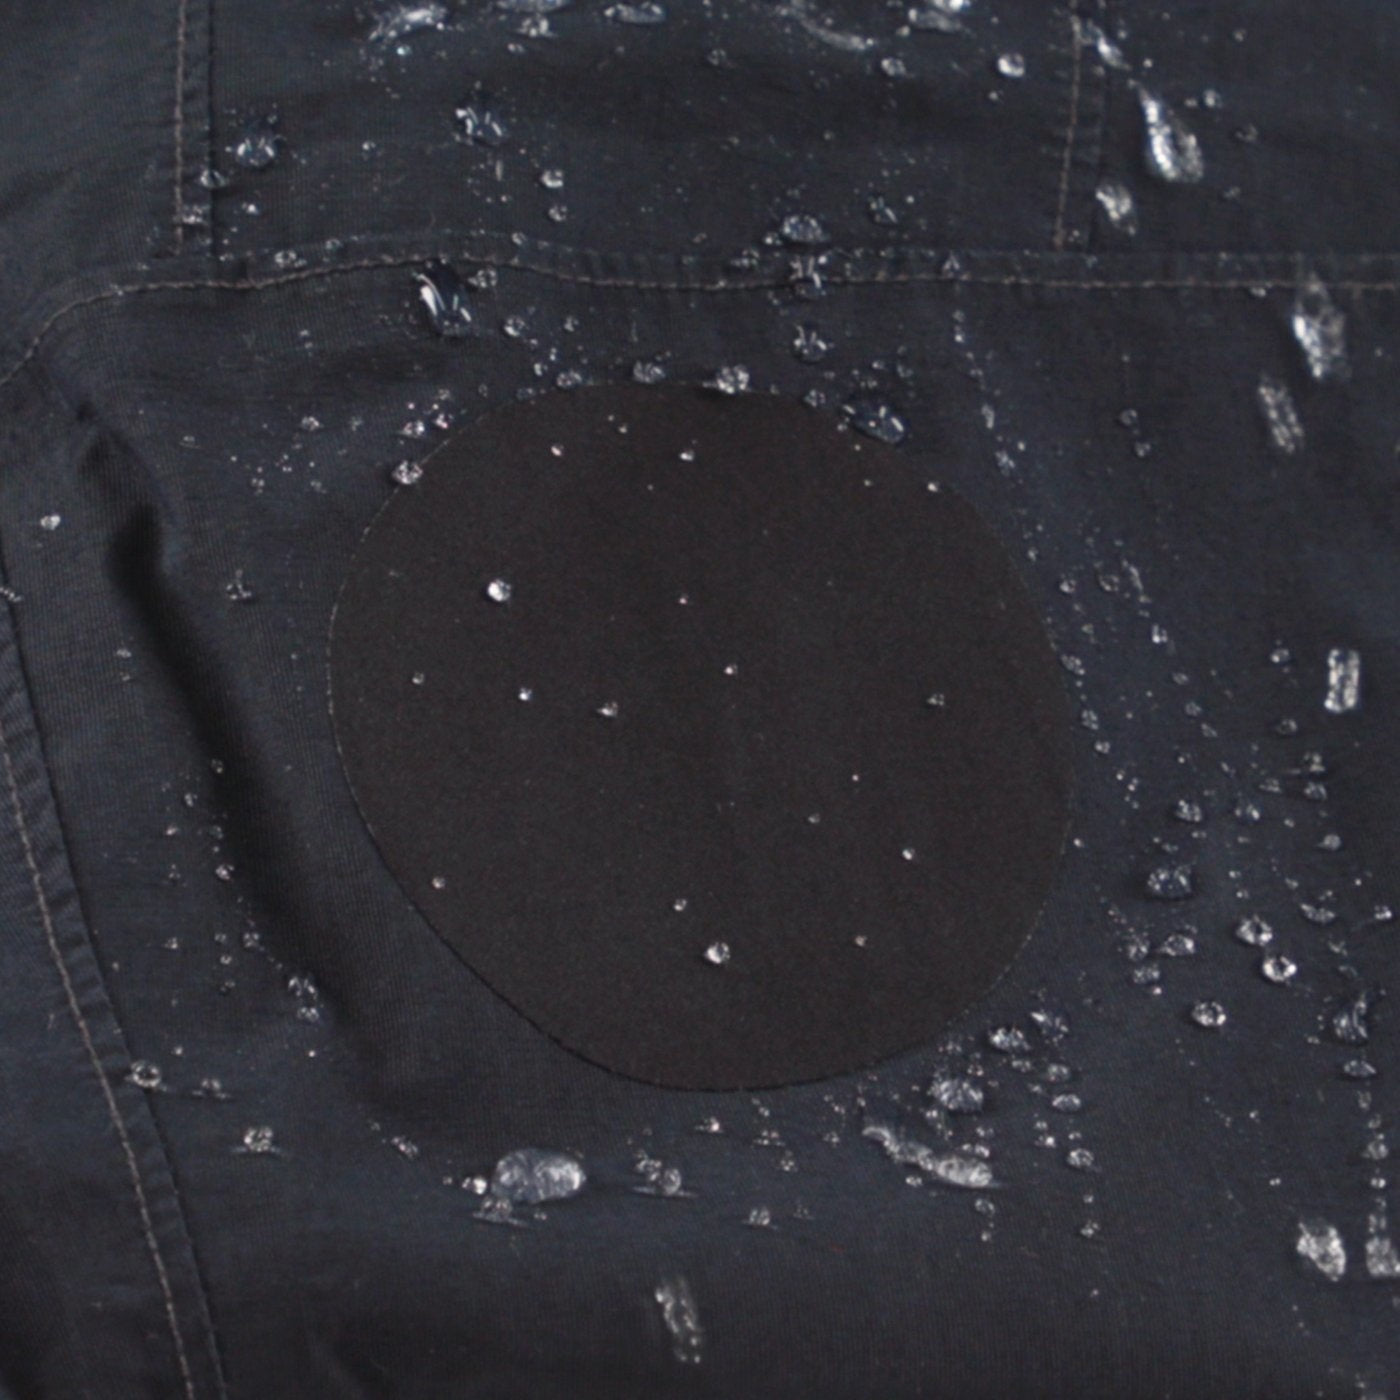 GORE-TEX Fabric Repair Kit (Black)